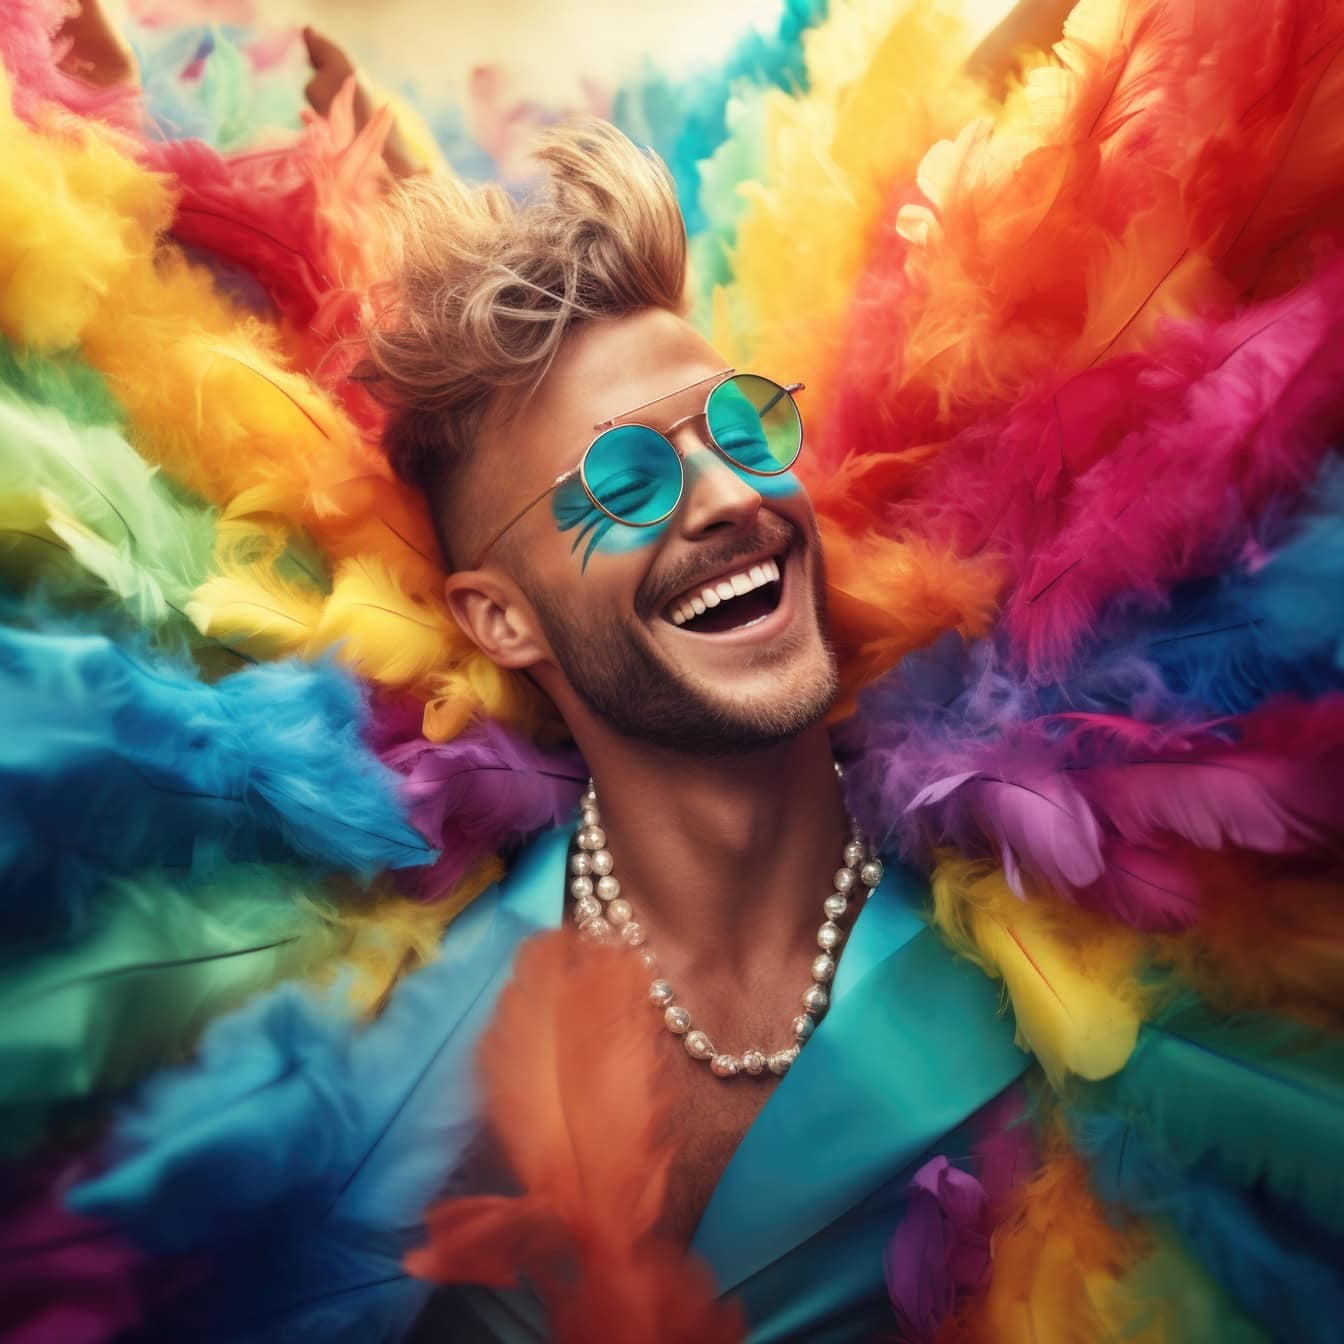 Joven sonriente con plumas de colores que lleva un collar de perlas en un carnaval, una ilustración de libertad y felicidad